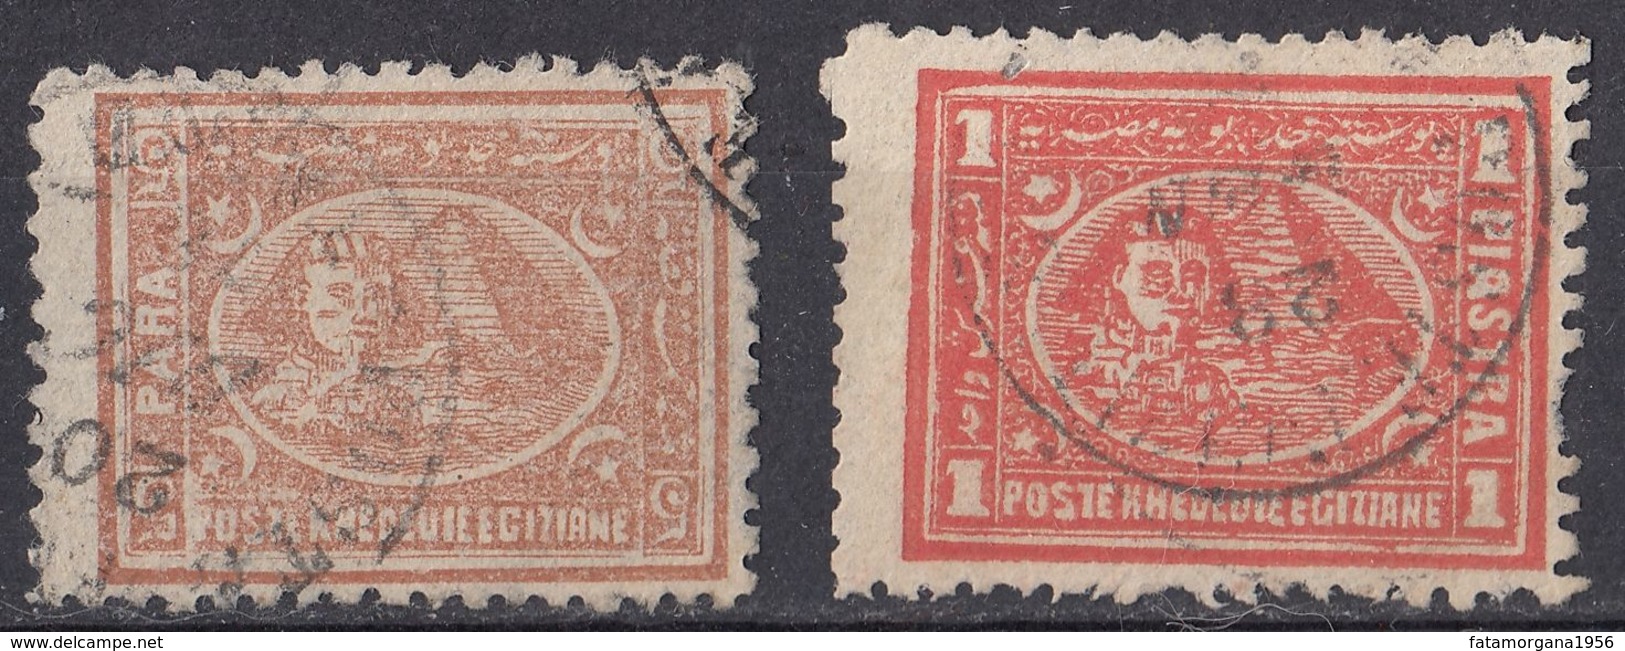 EGITTO - 1874/1875 - Lotto Di 2 Valori Usati: Yvert 14A E 17A, Come Da Immagine. - 1866-1914 Khedivate Of Egypt